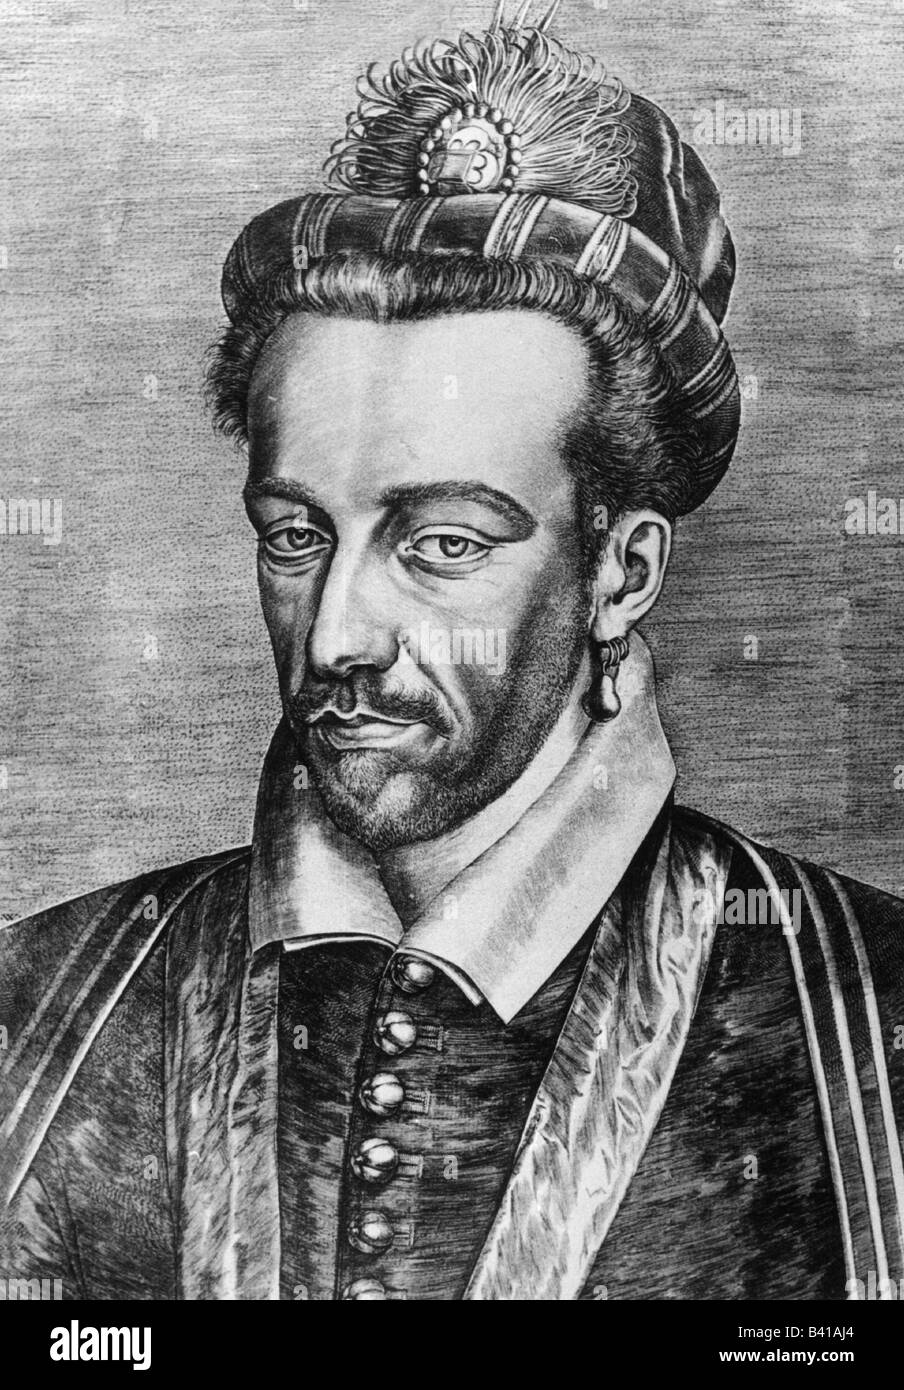 Enrico III, 19.9.1551 - 2.8 1589, Re di Francia, 30.5.1574 - 2.8.1589, ritratto, incisione del XIX secolo, Valois, re di Polonia 1572-1573, Henri III Duca di Anjou, , artista del diritto d'autore non deve essere cancellata Foto Stock